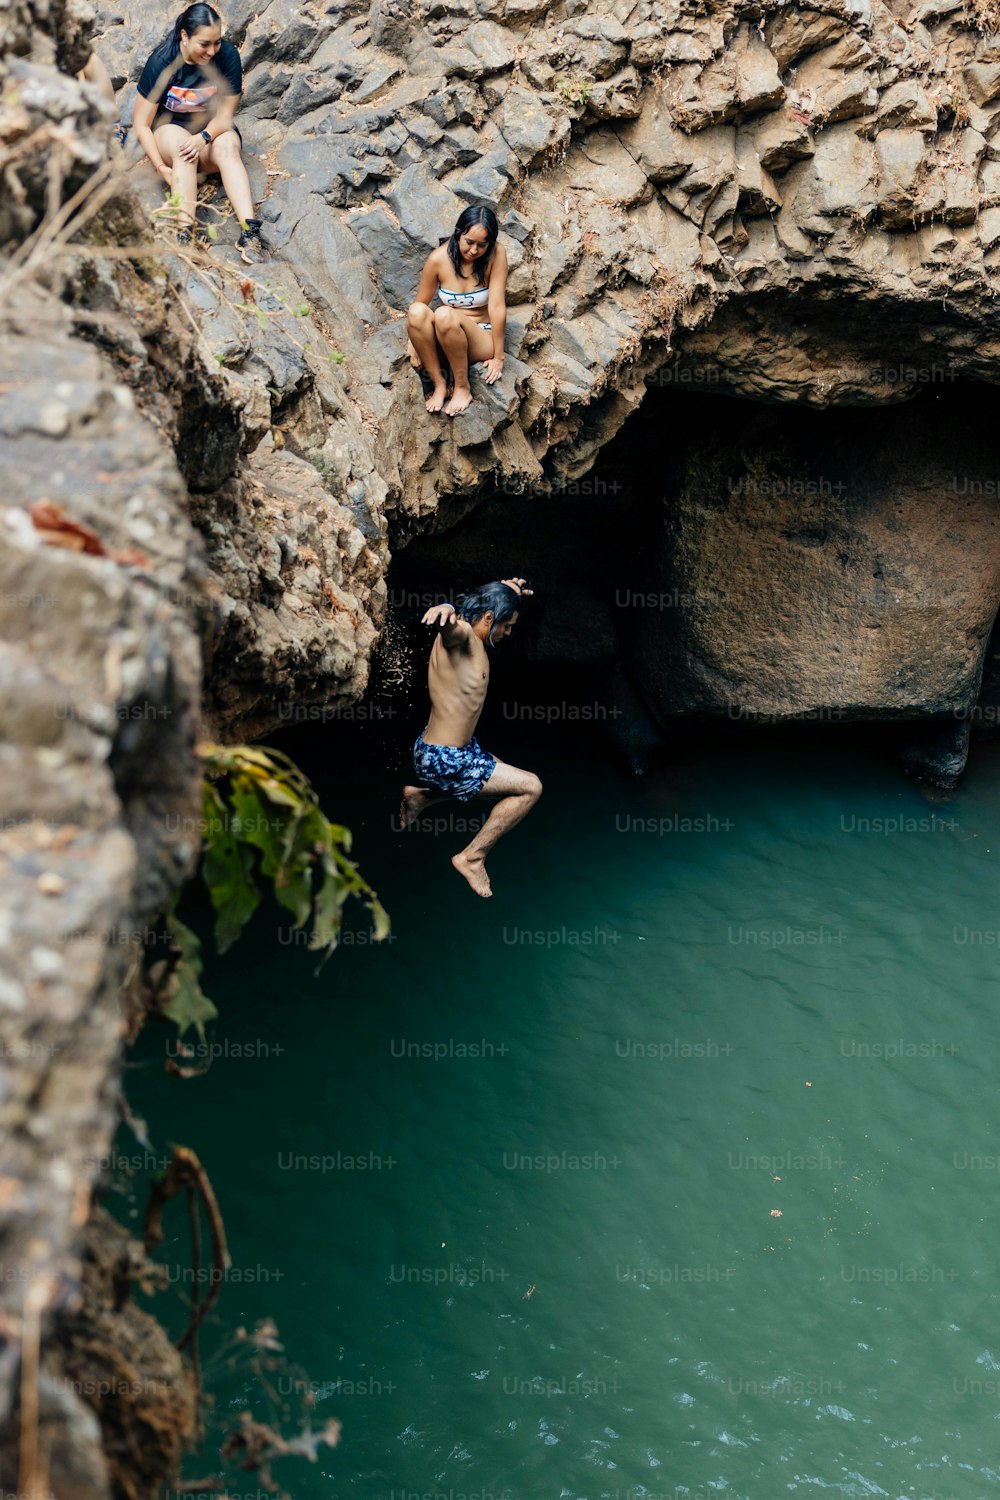 Un grupo de personas saltando de un acantilado a un cuerpo de agua